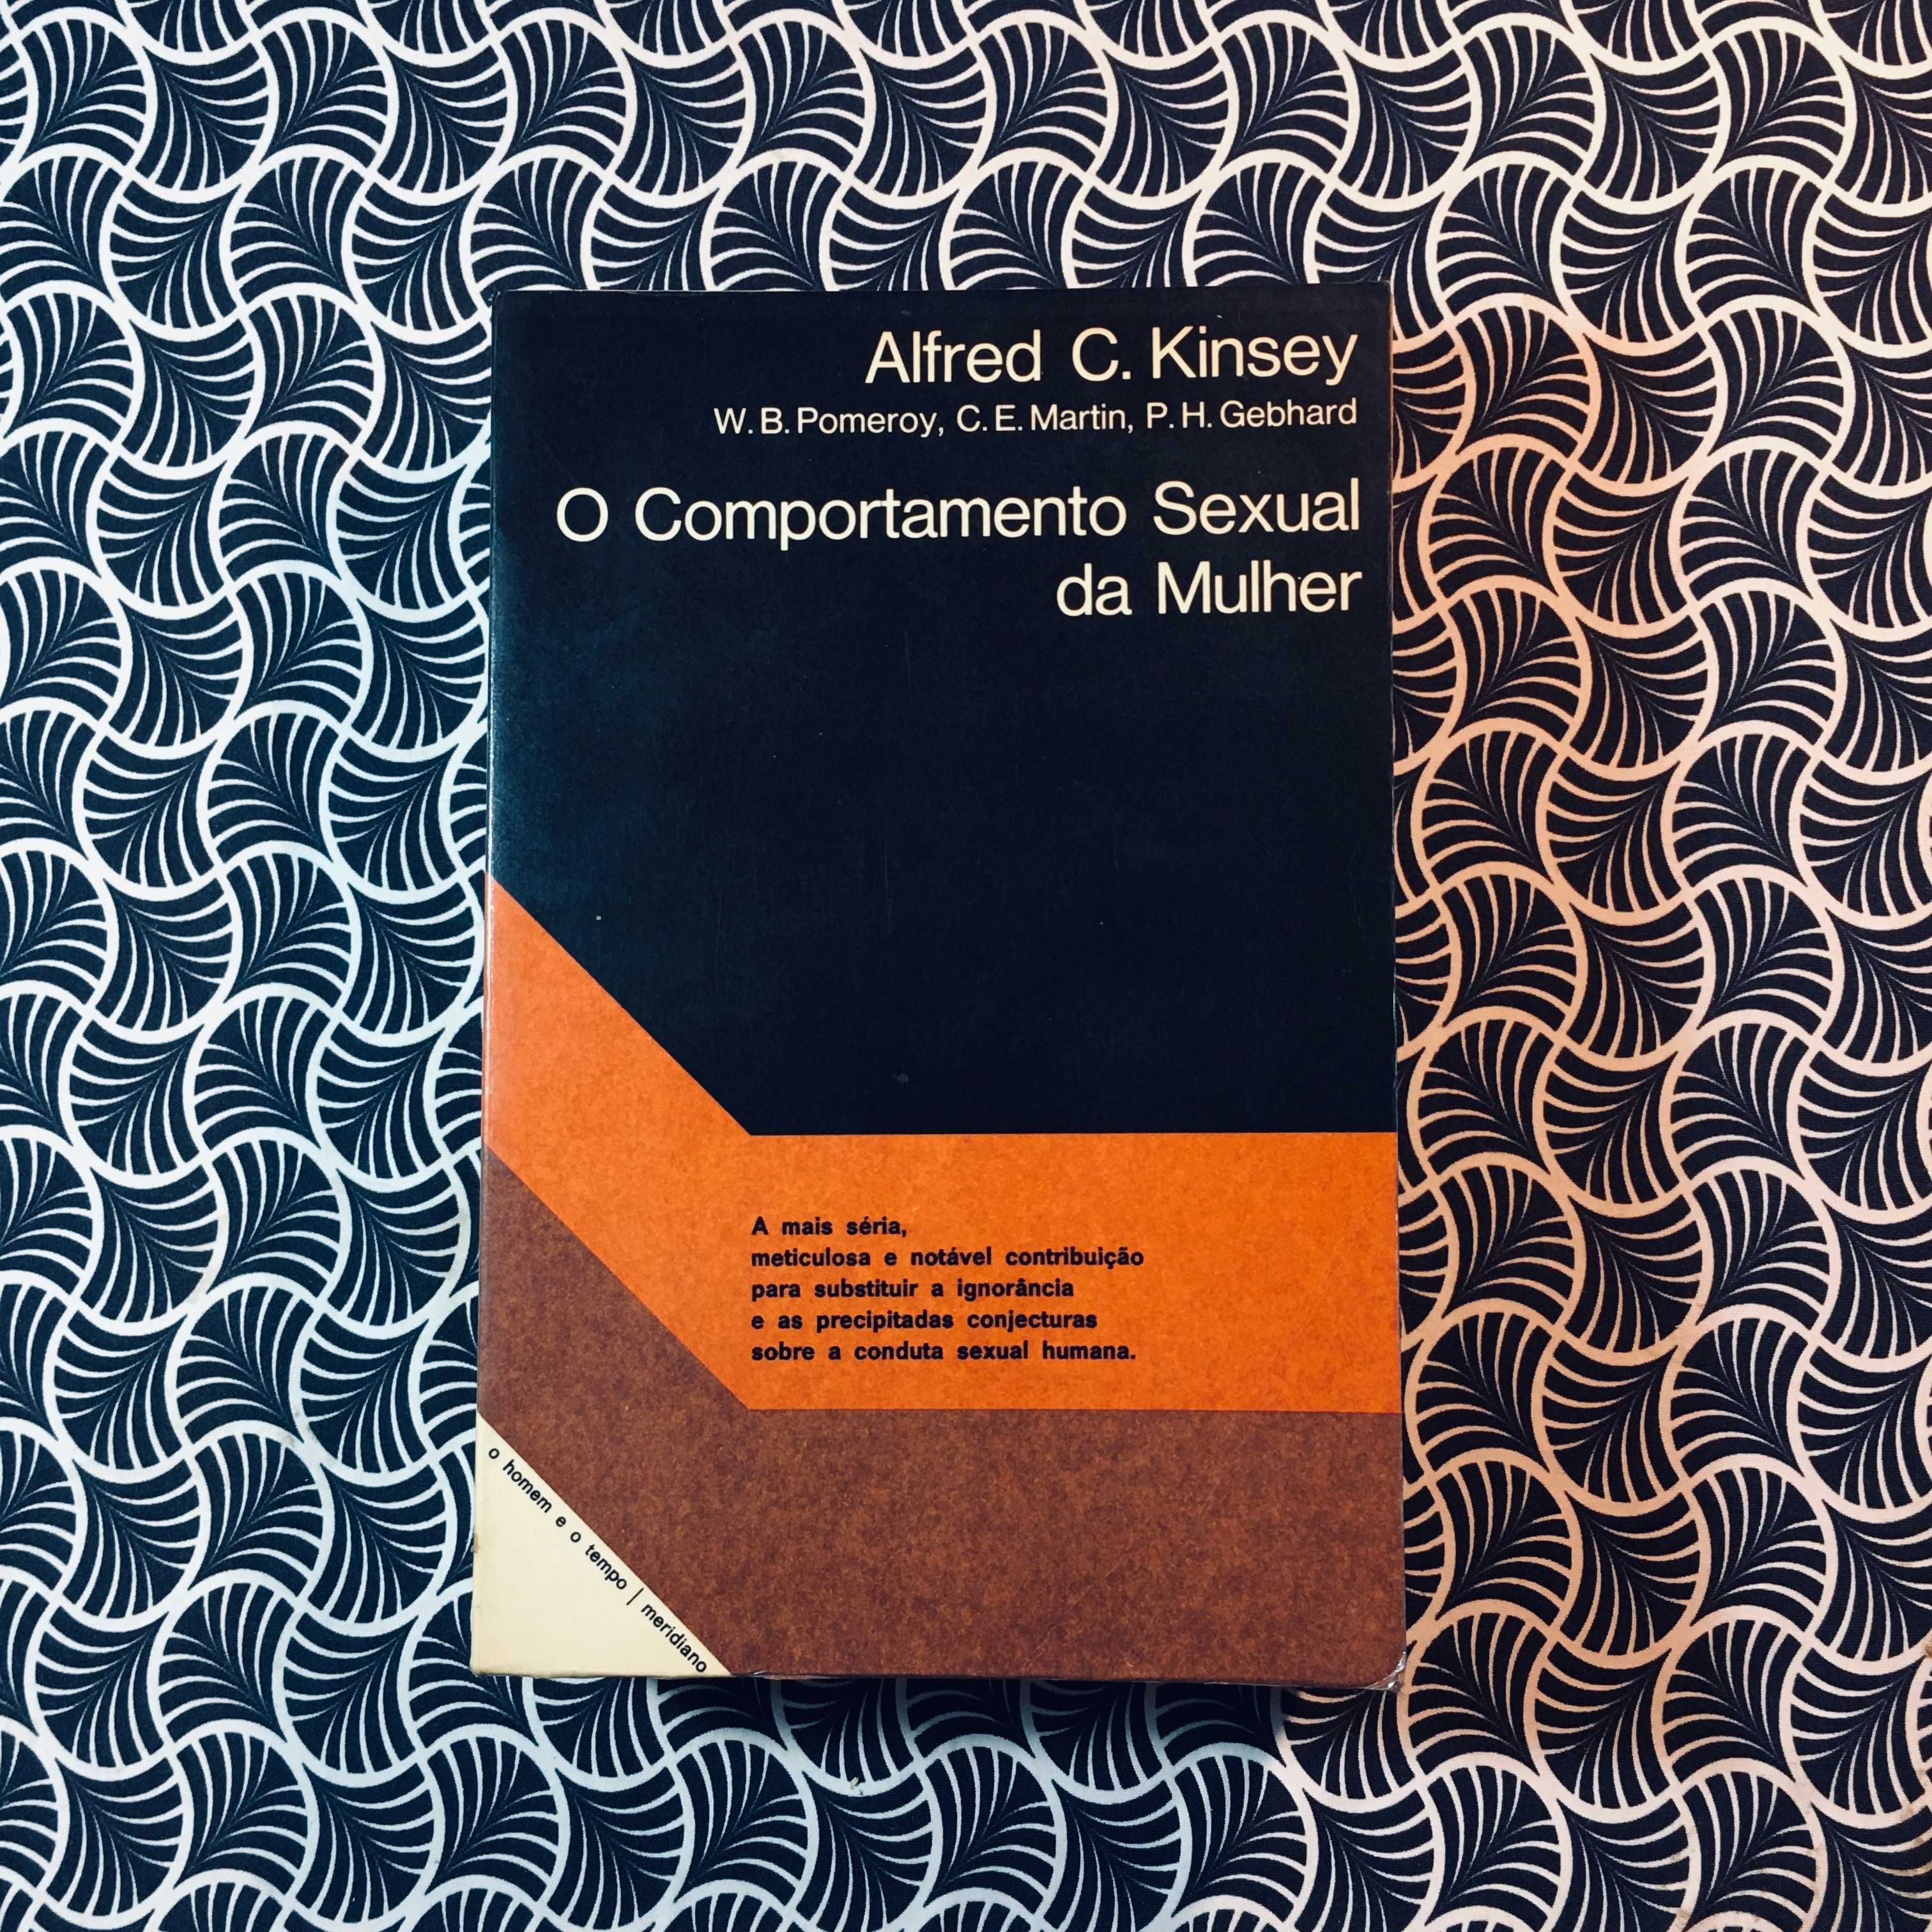 O Comportamento Sexual da Mulher - Alfred C. Kinsey